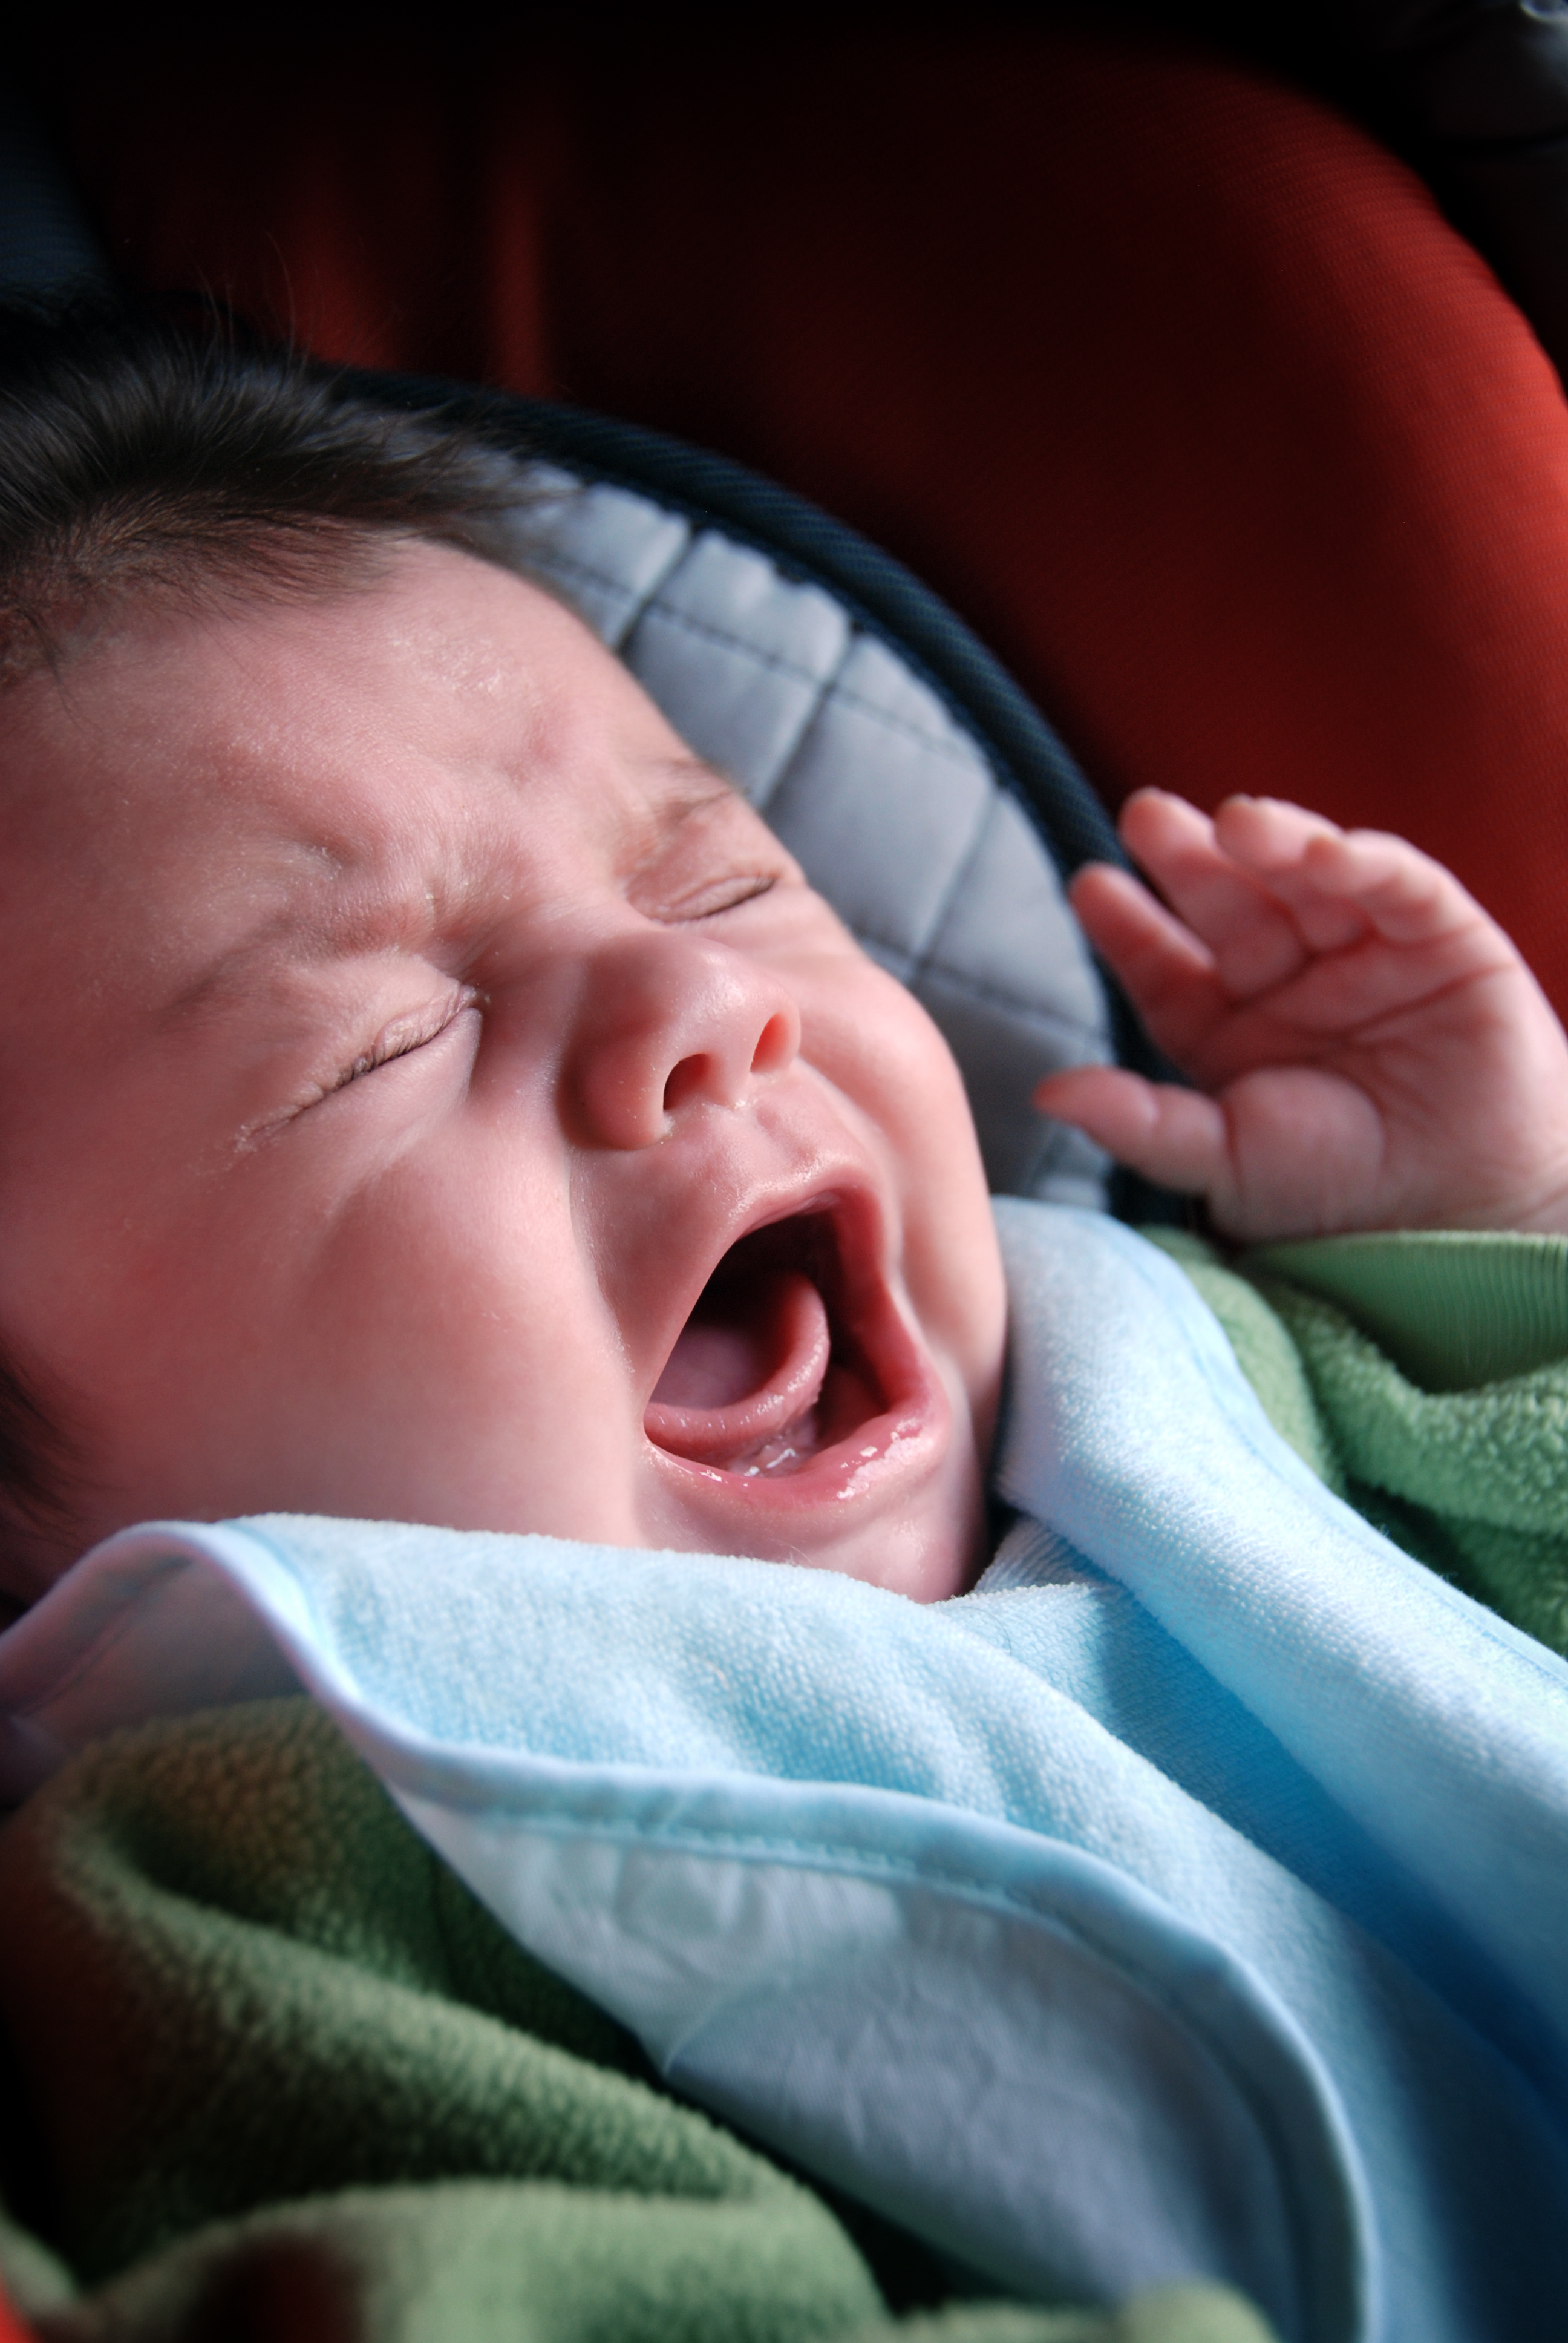 Ein Baby in Not | Quelle: Shutterstock